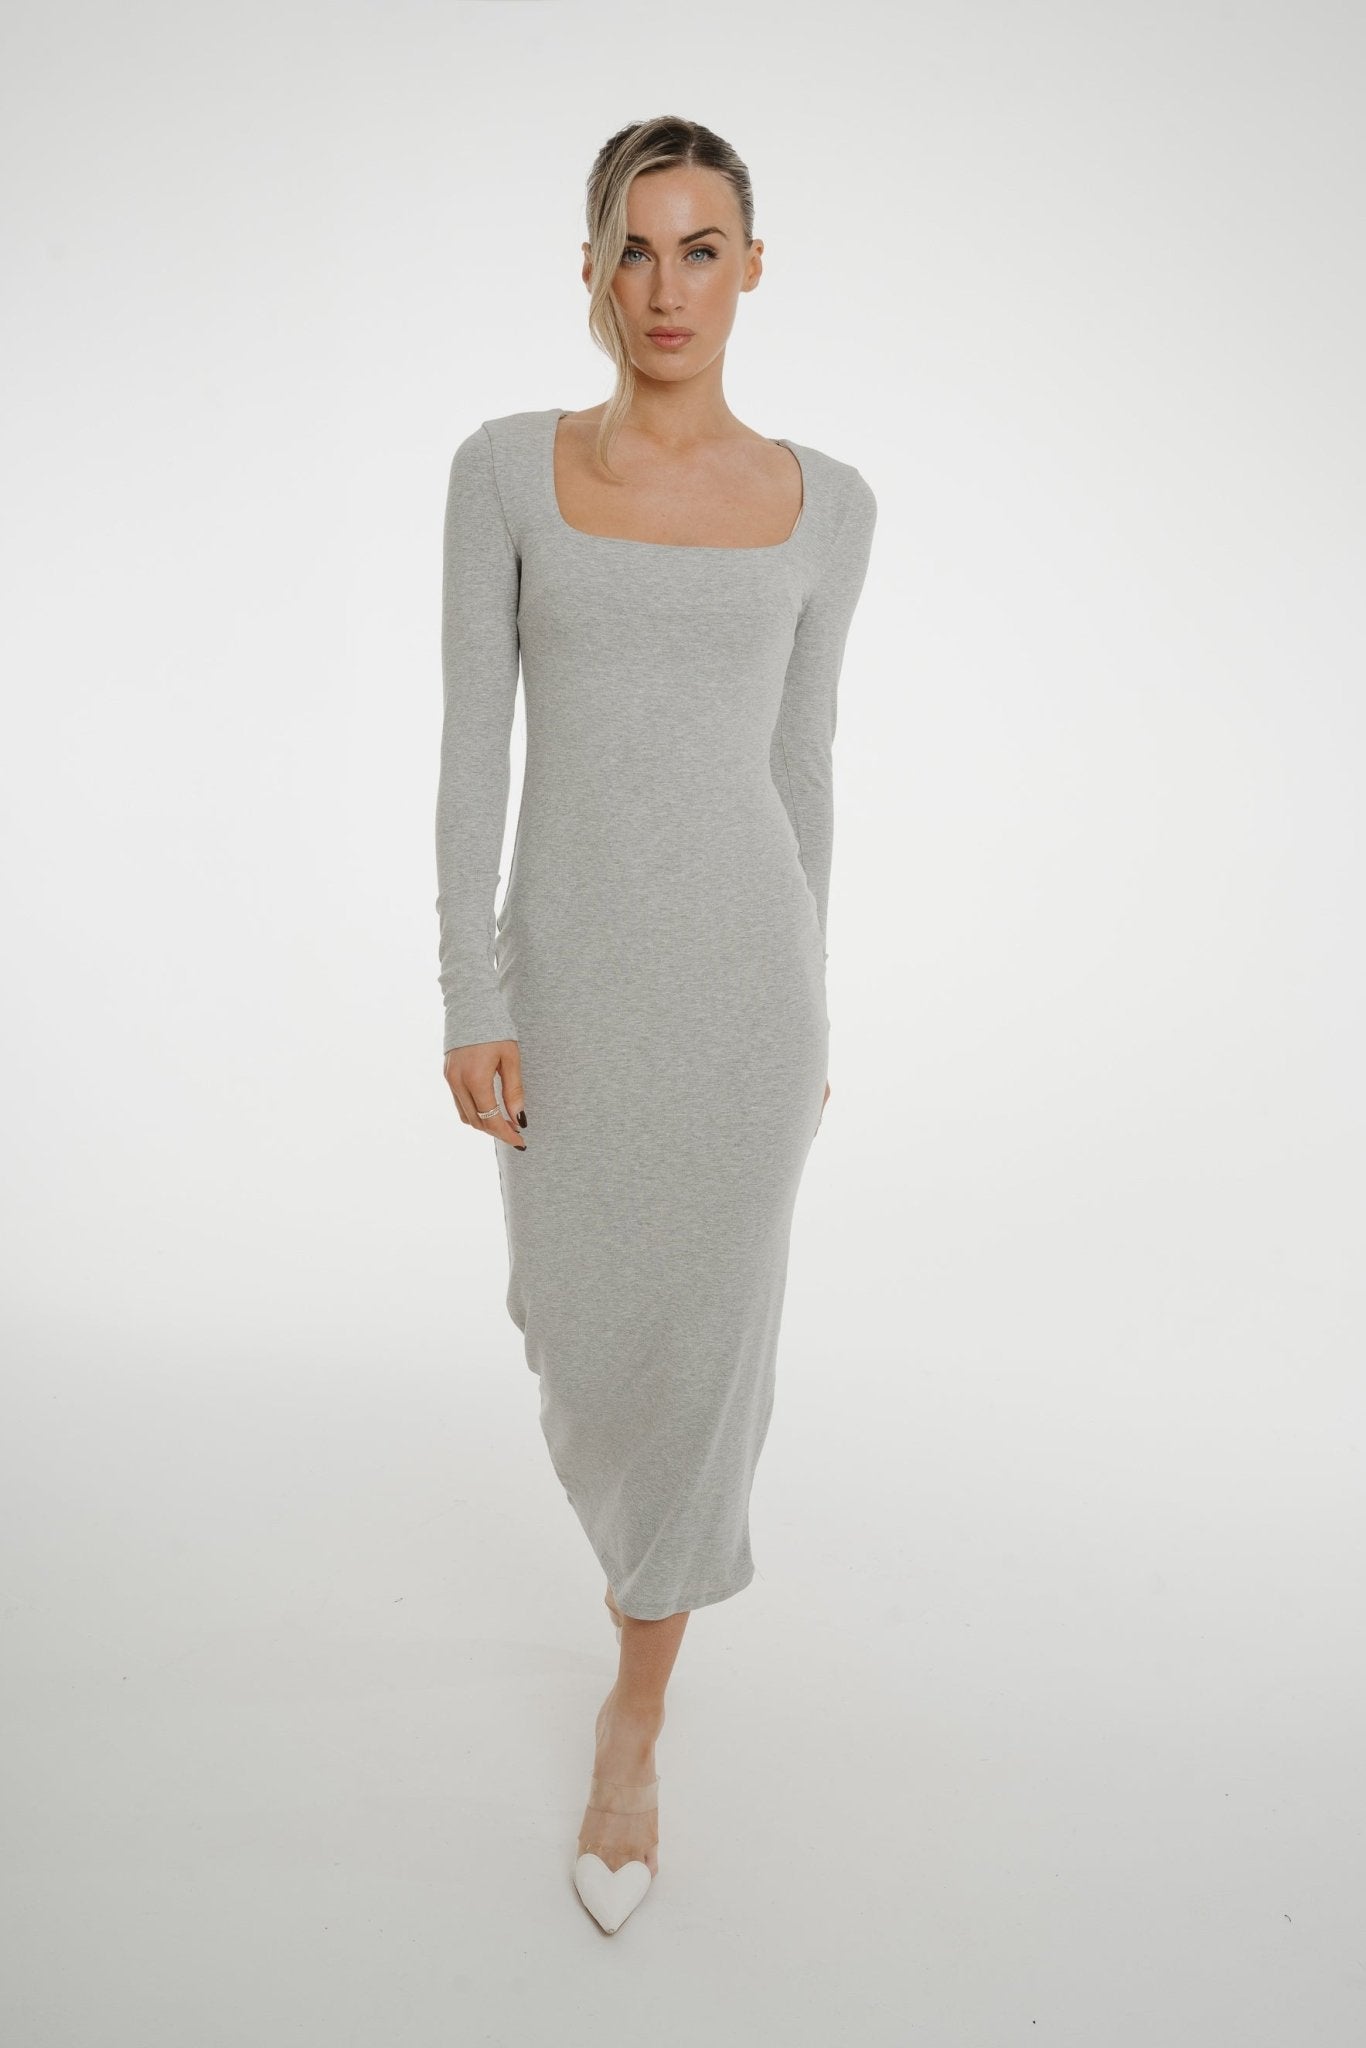 Kate Midi Dress In Grey - The Walk in Wardrobe